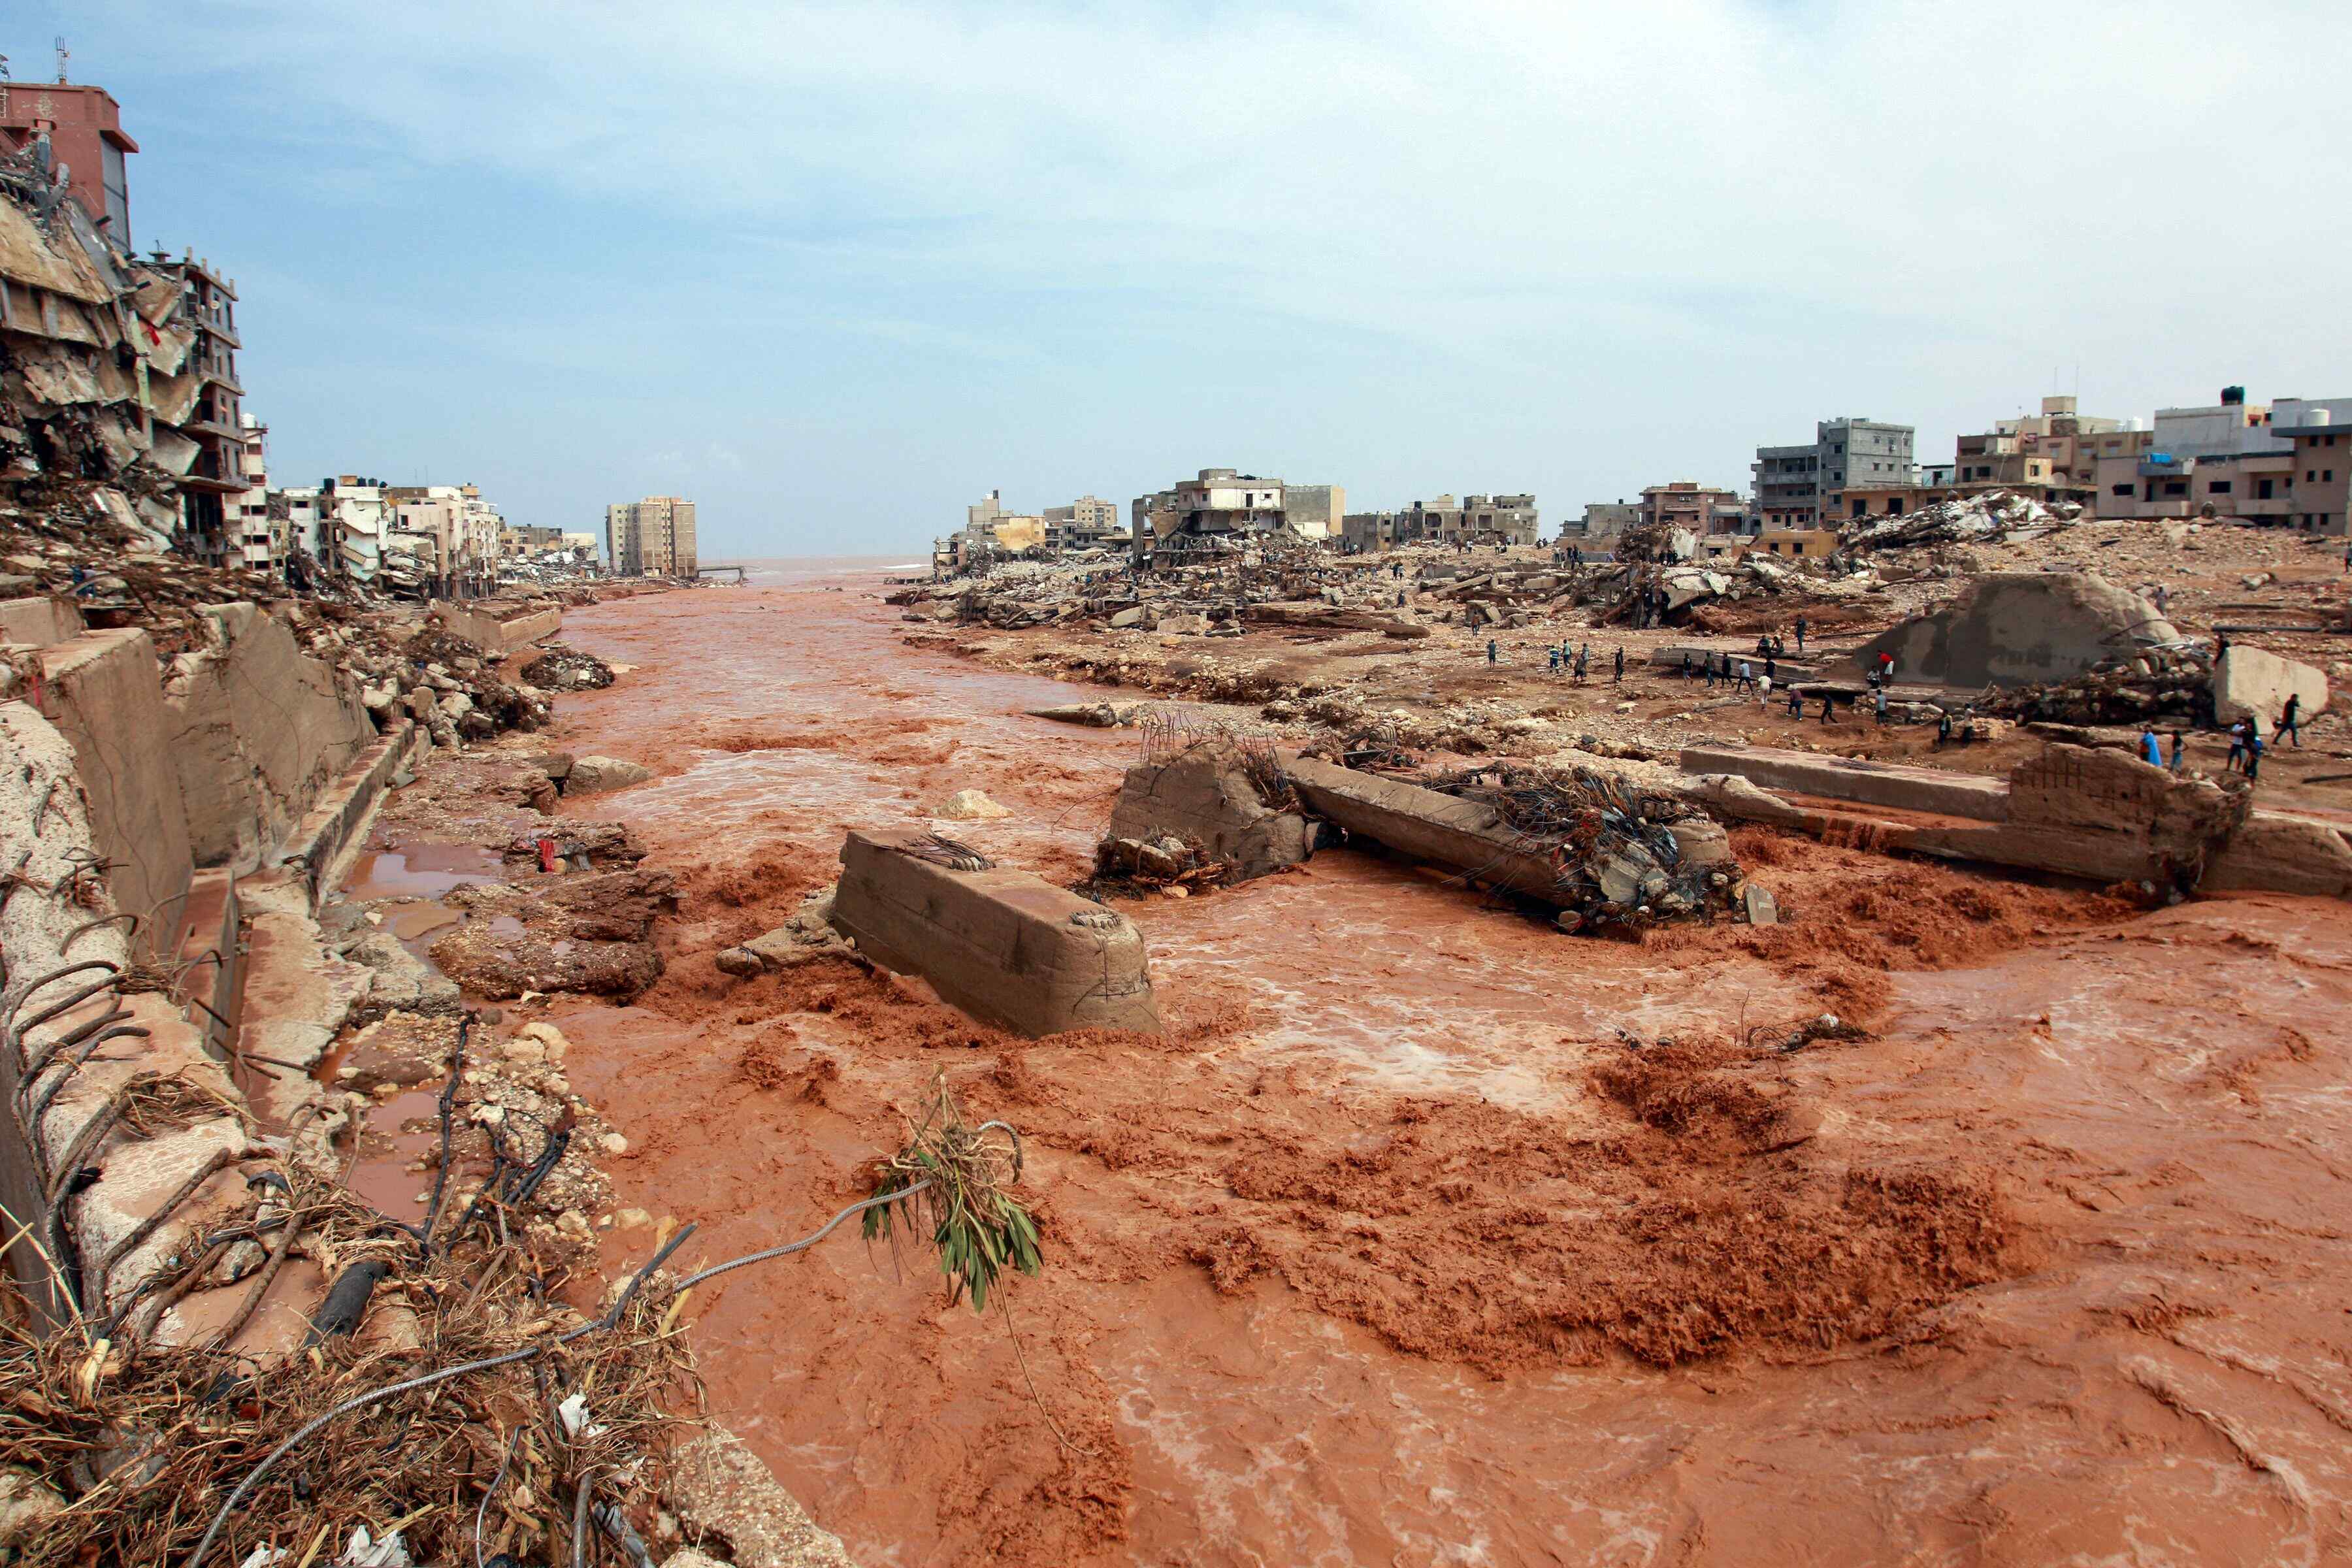  Flash floods in eastern Libya 